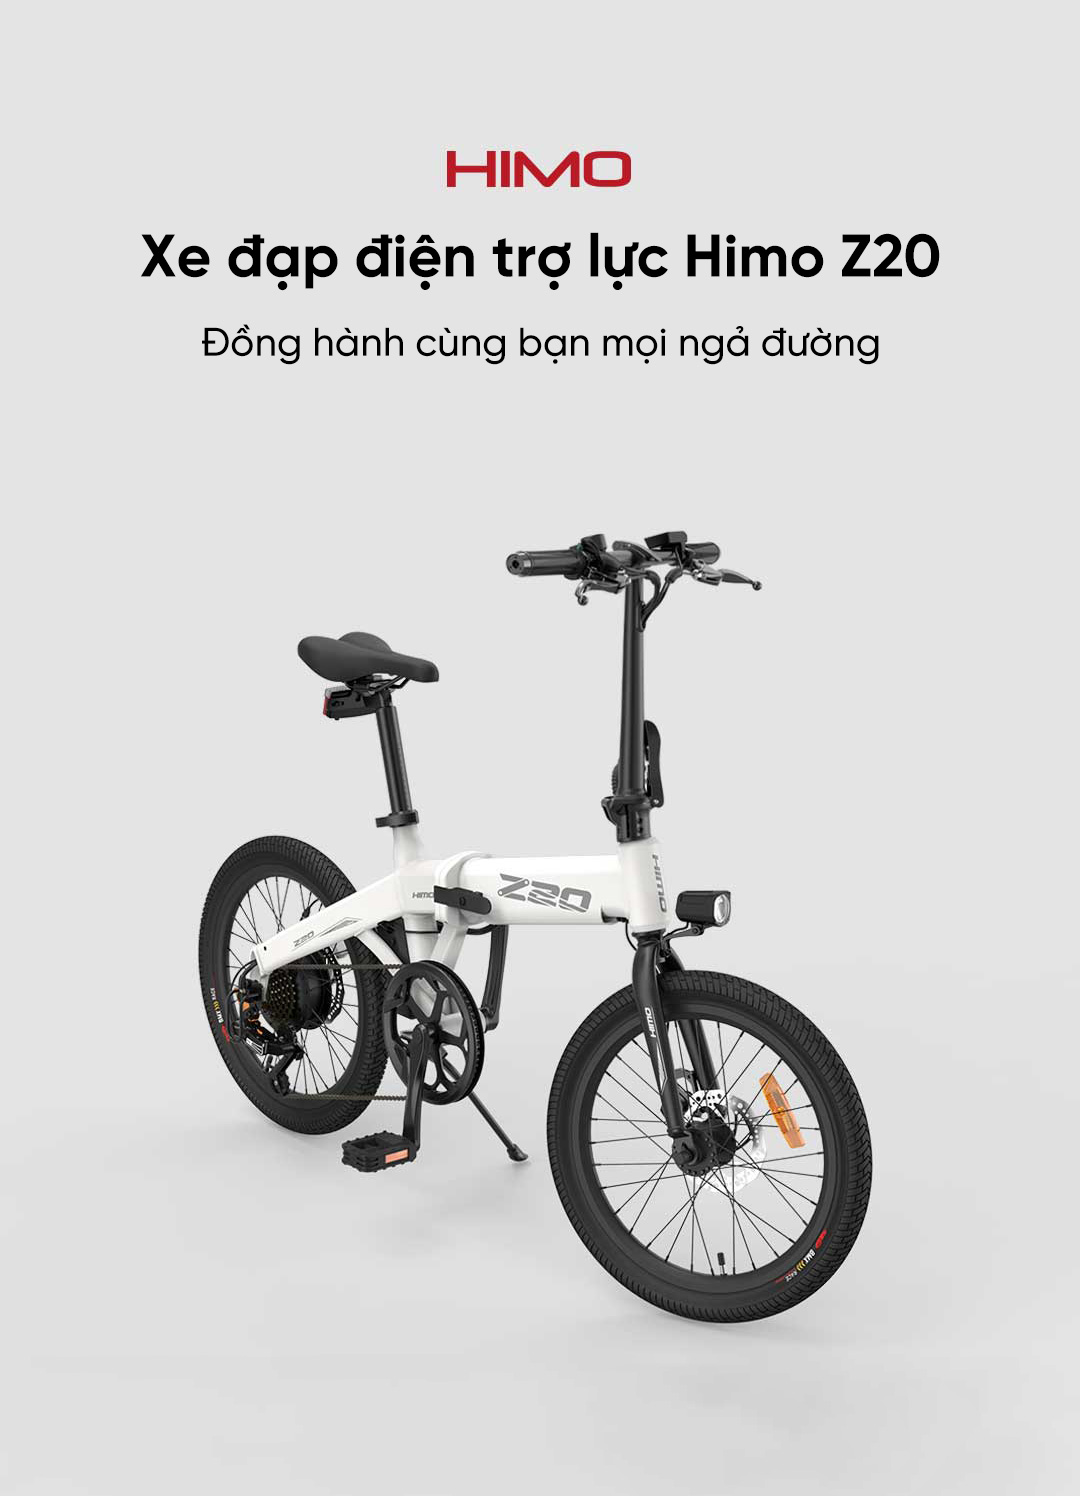 Xe đạp điện trợ lực Himo Z20 với thiết kế năng động, trẻ trung, mạnh mẽ phù hợp với mọi lứa tuổi